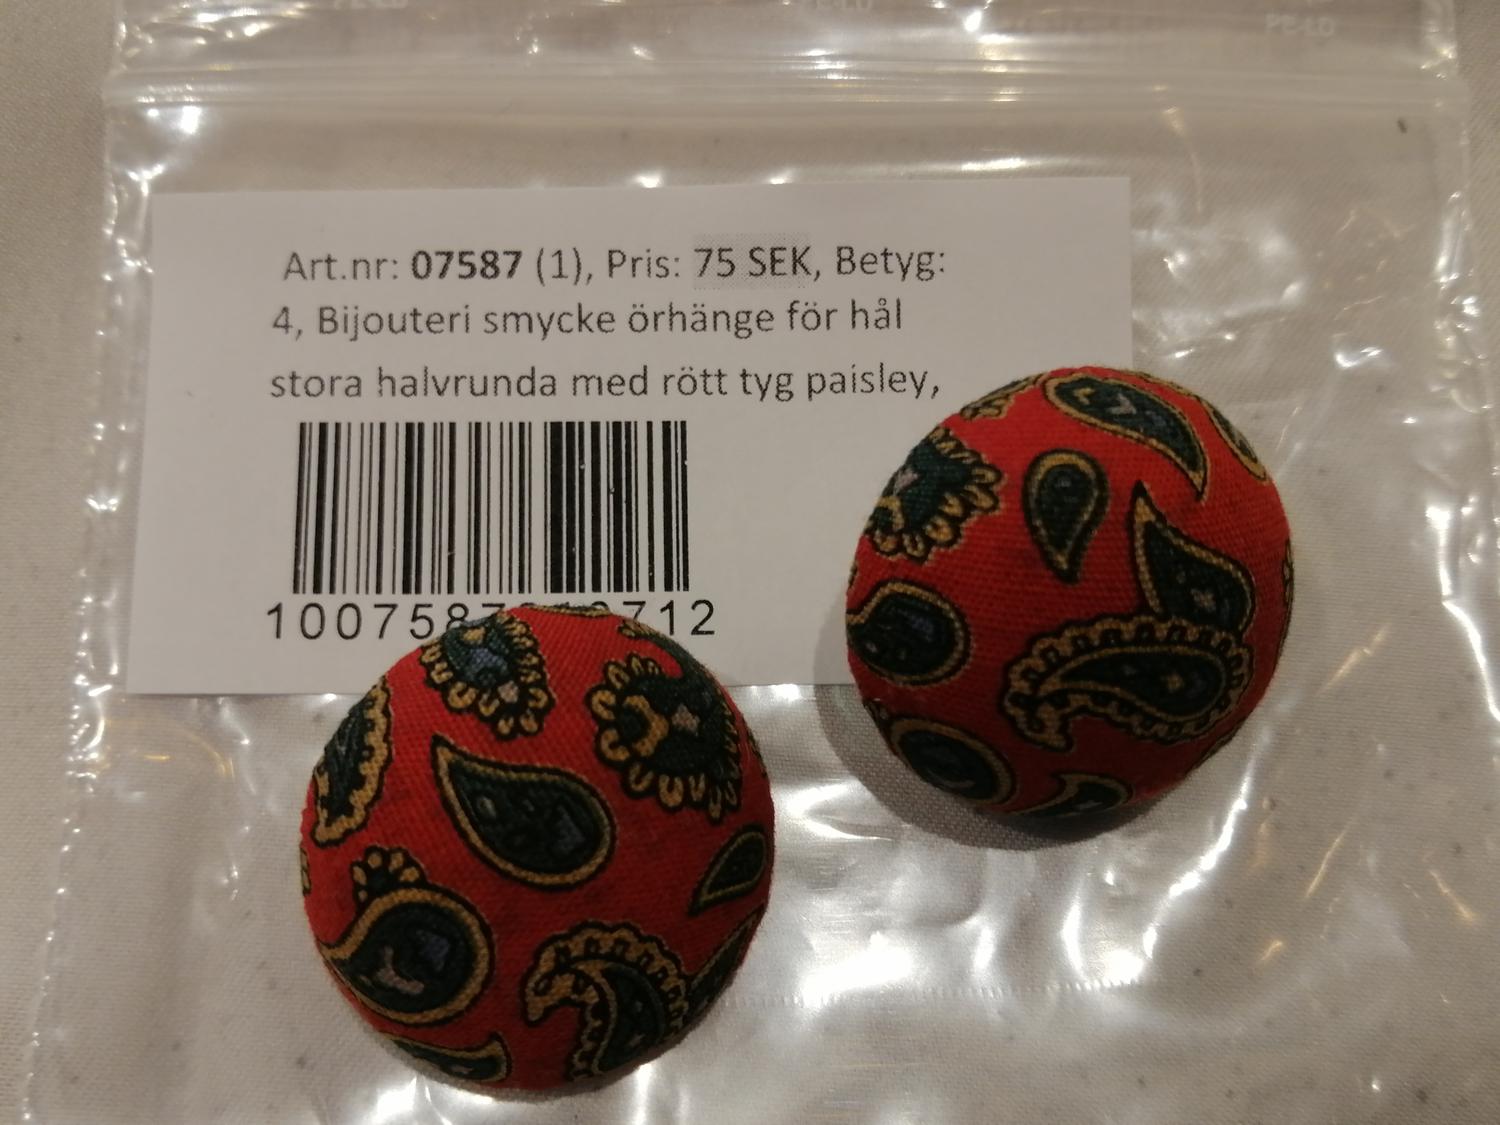 Bijouteri smycke örhänge för hål stora halvrunda med rött tyg paisley